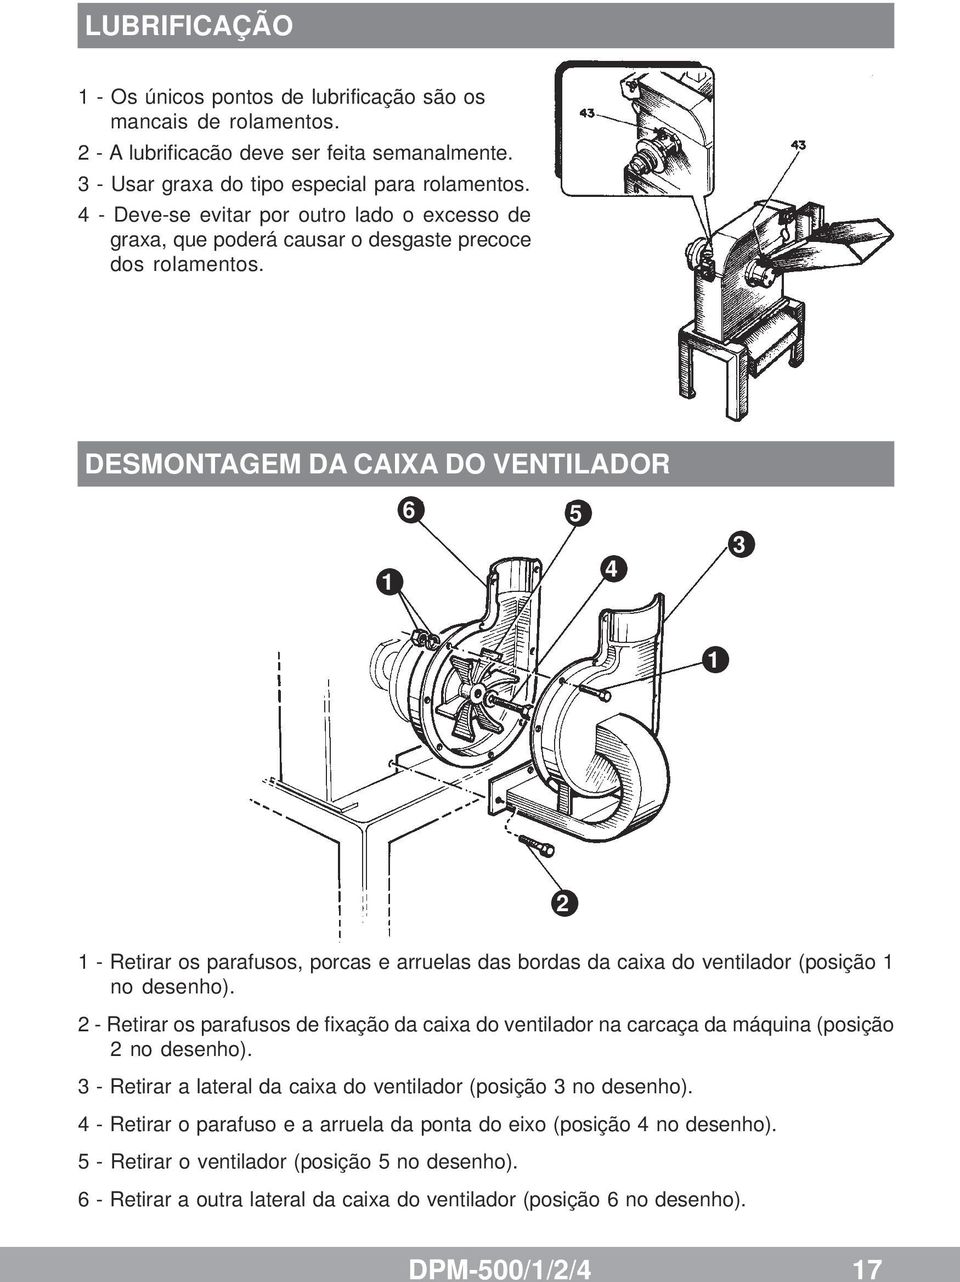 DESMONTAGEM DA CAIXA DO VENTILADOR 1 6 5 4 3 1 2 1 - Retirar os parafusos, porcas e arruelas das bordas da caixa do ventilador (posição 1 no desenho).